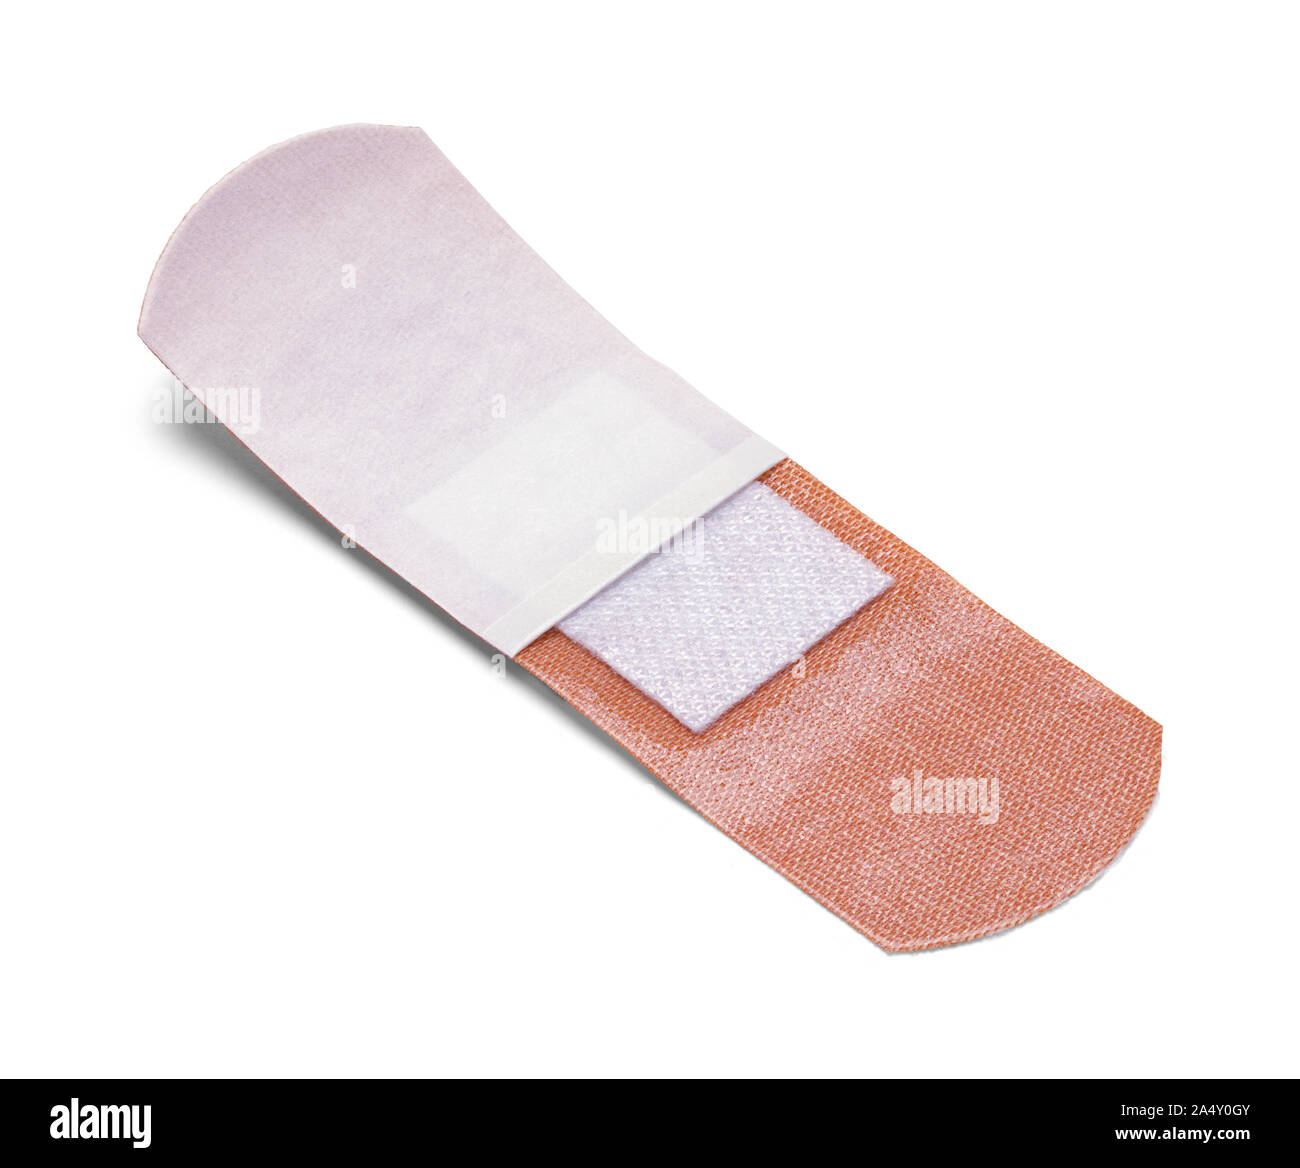 Open Adhesive Bandage Isolated on White Background. Stock Photo